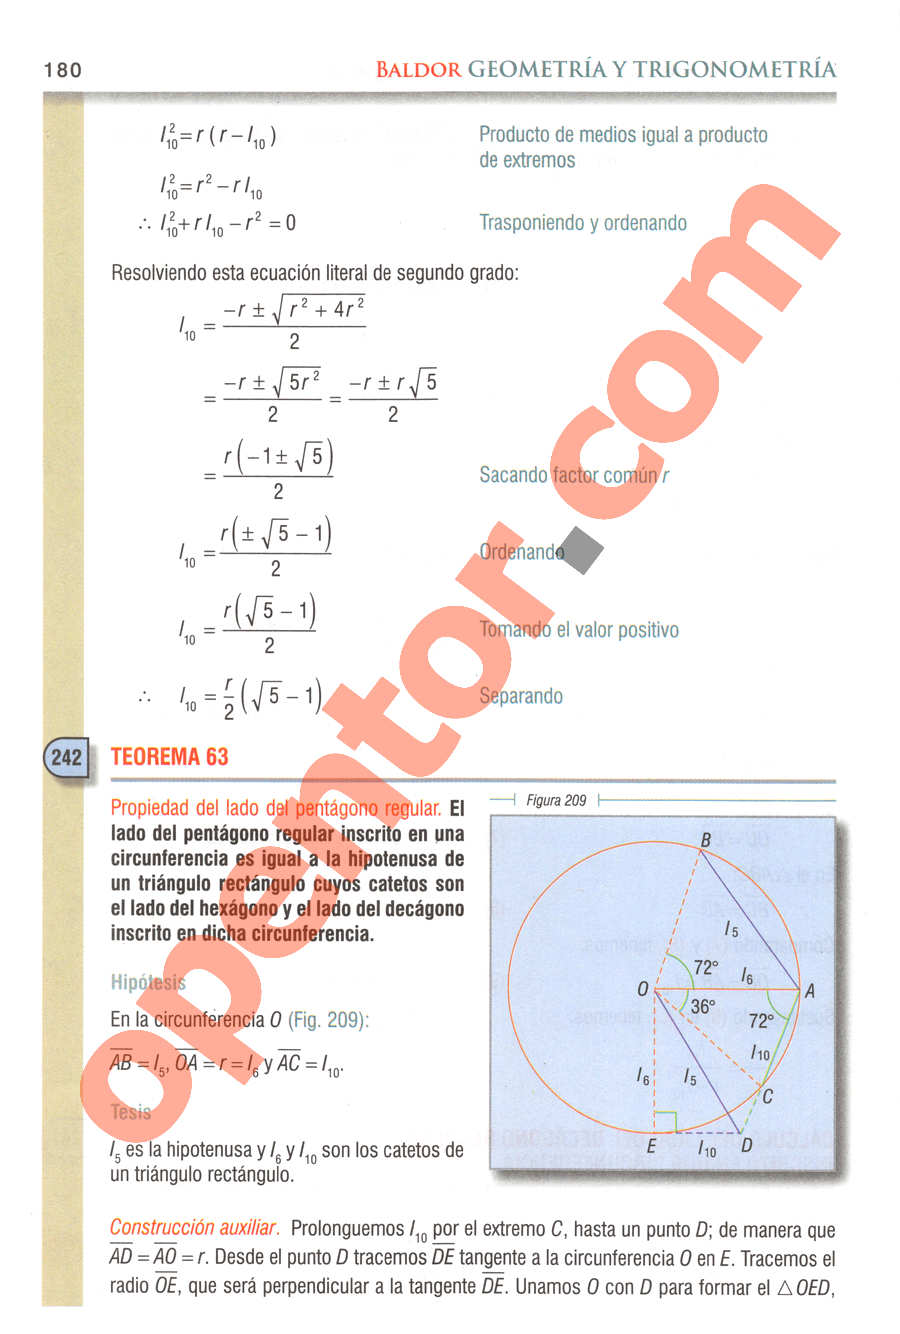 Geometría y Trigonometría de Baldor - Página 180